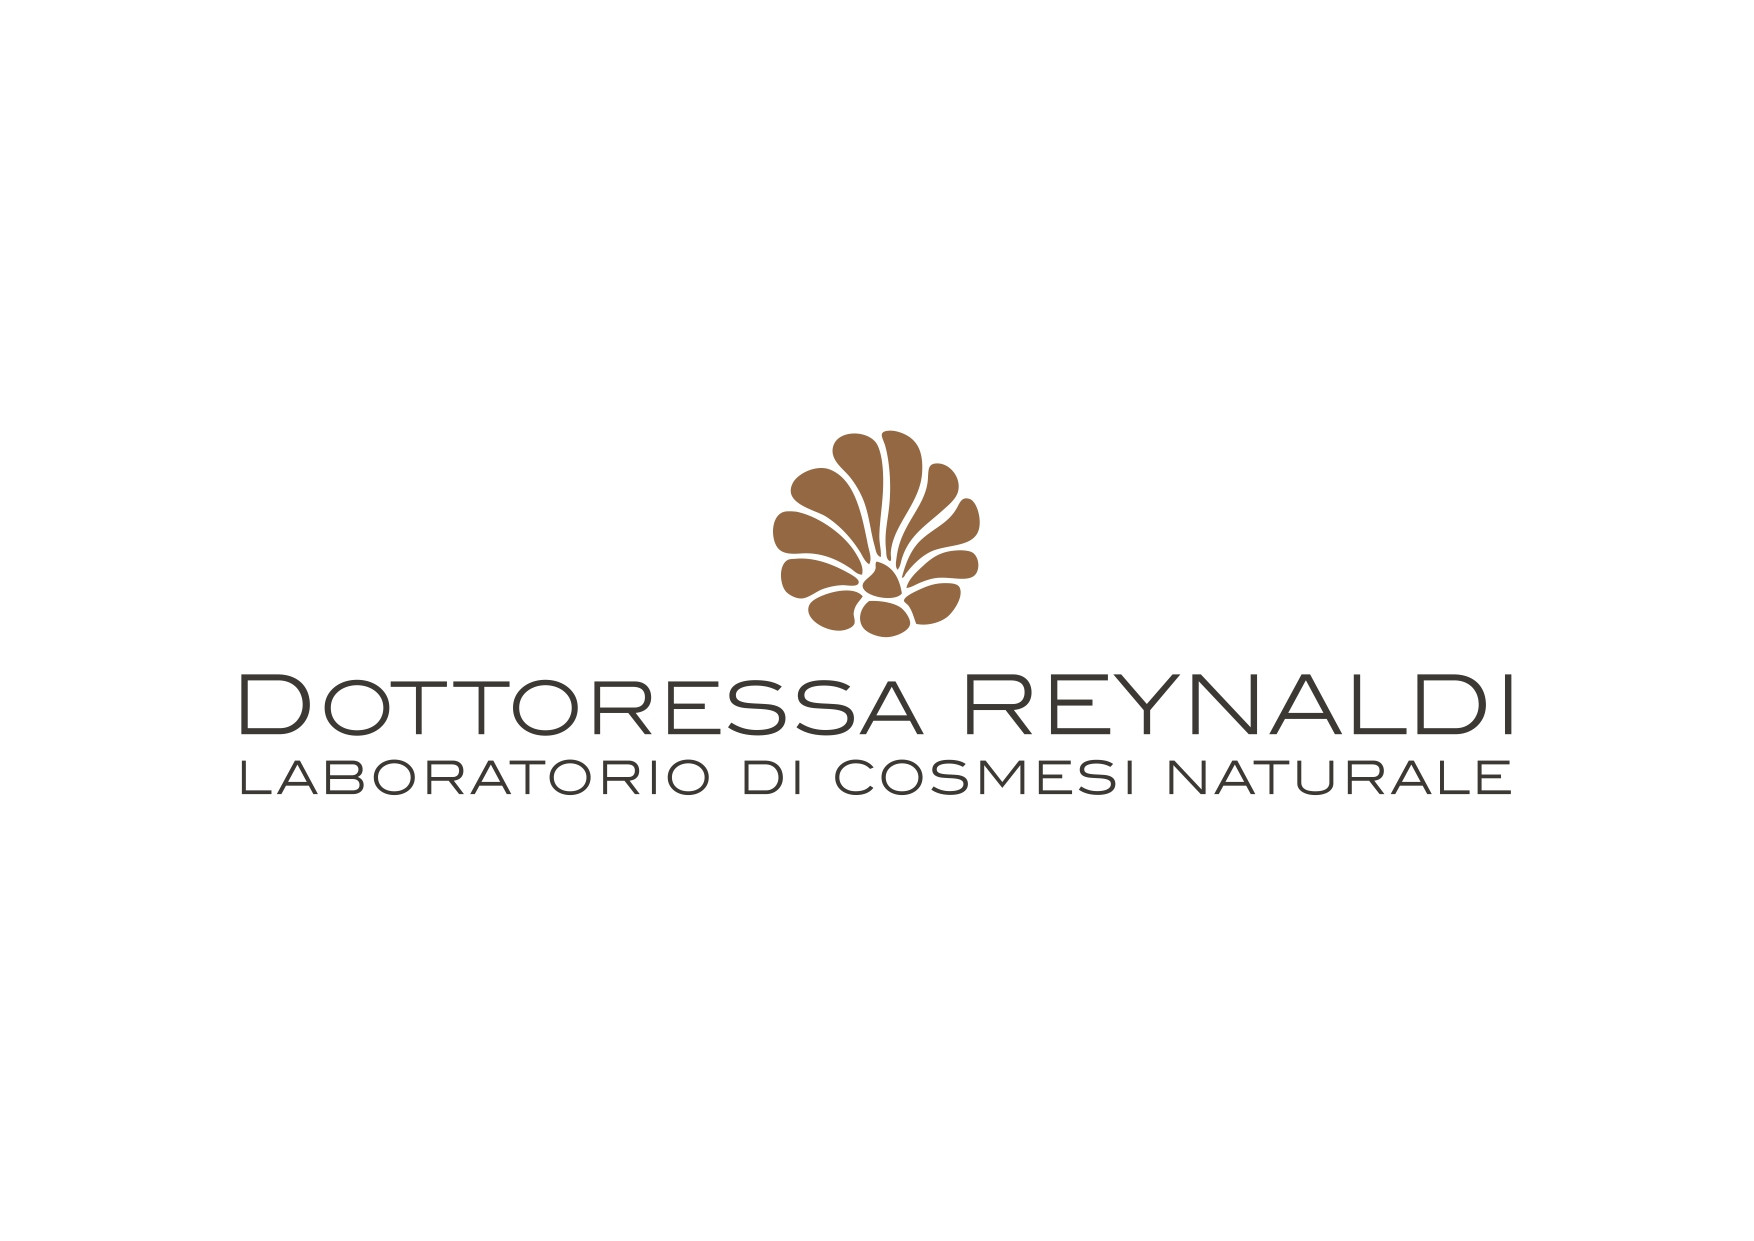 Dottoressa Reynaldi - Laboratorio di cosmesi naturale